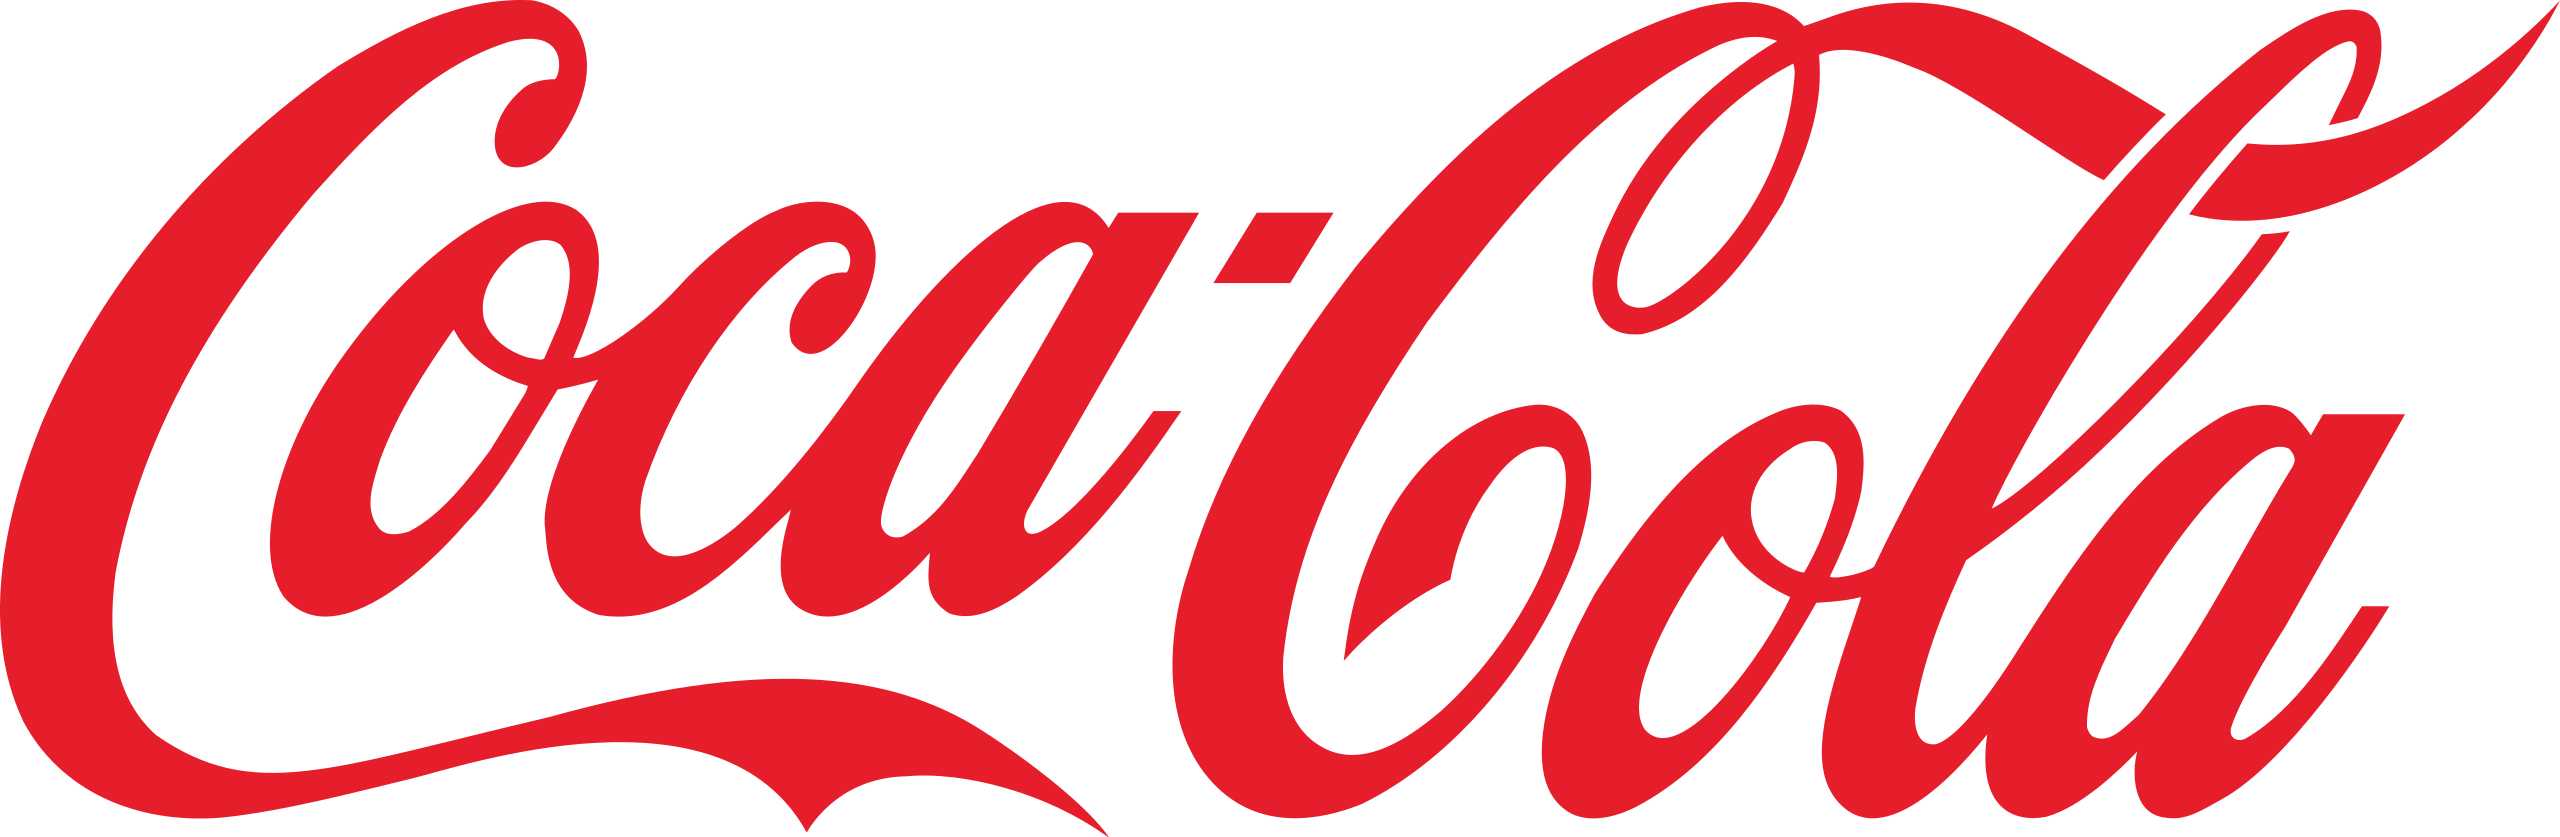 Coca Cola Gutschein